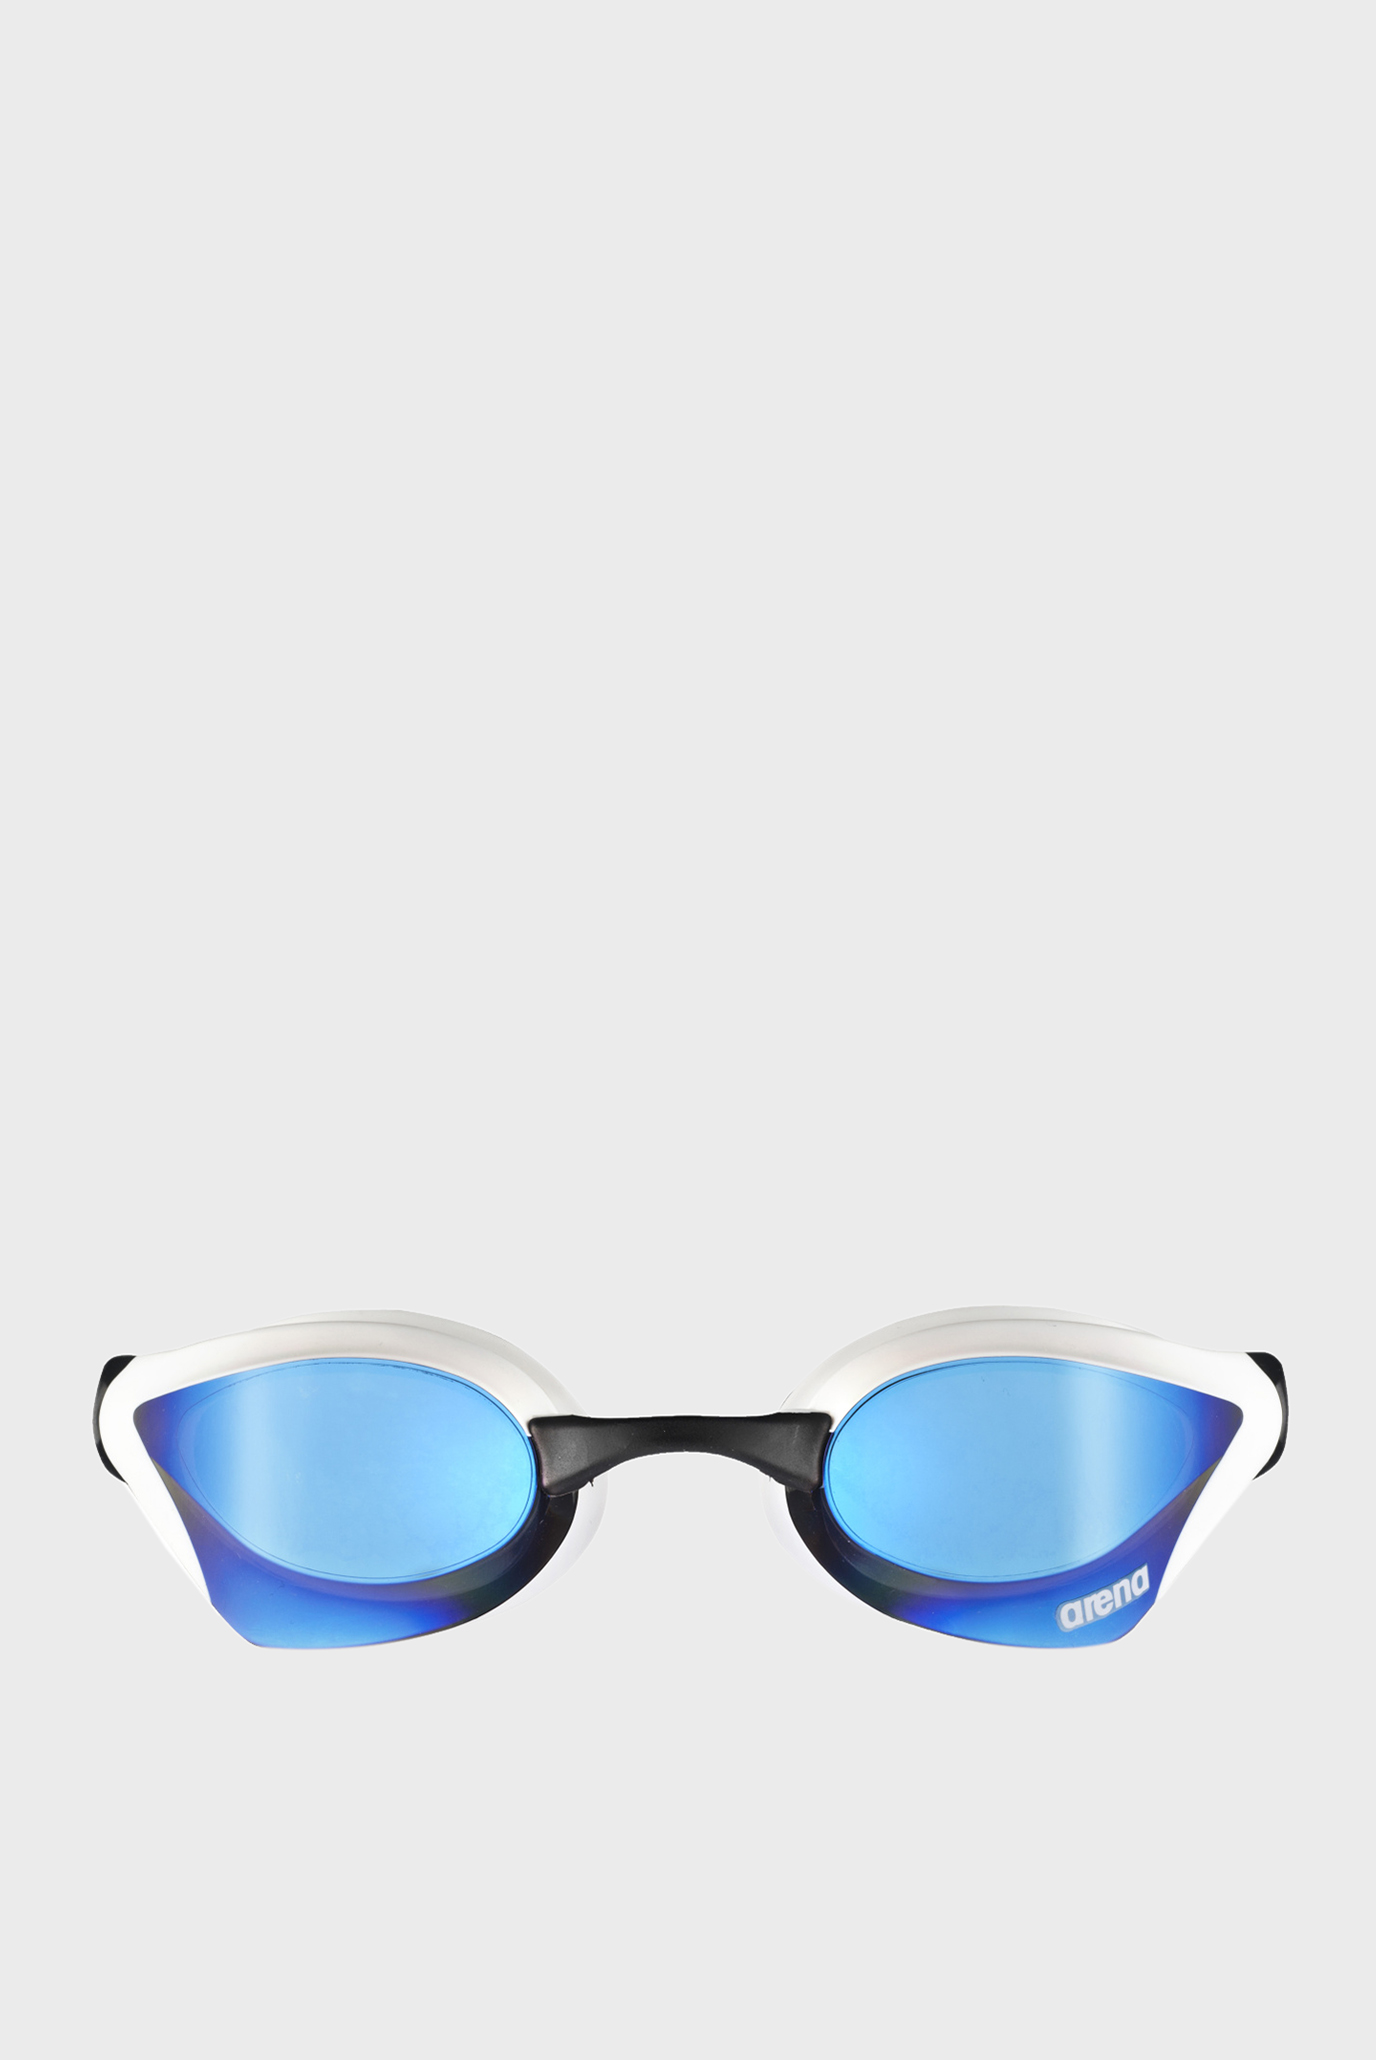 Голубые очки для плавания COBRA CORE MIRROR 1